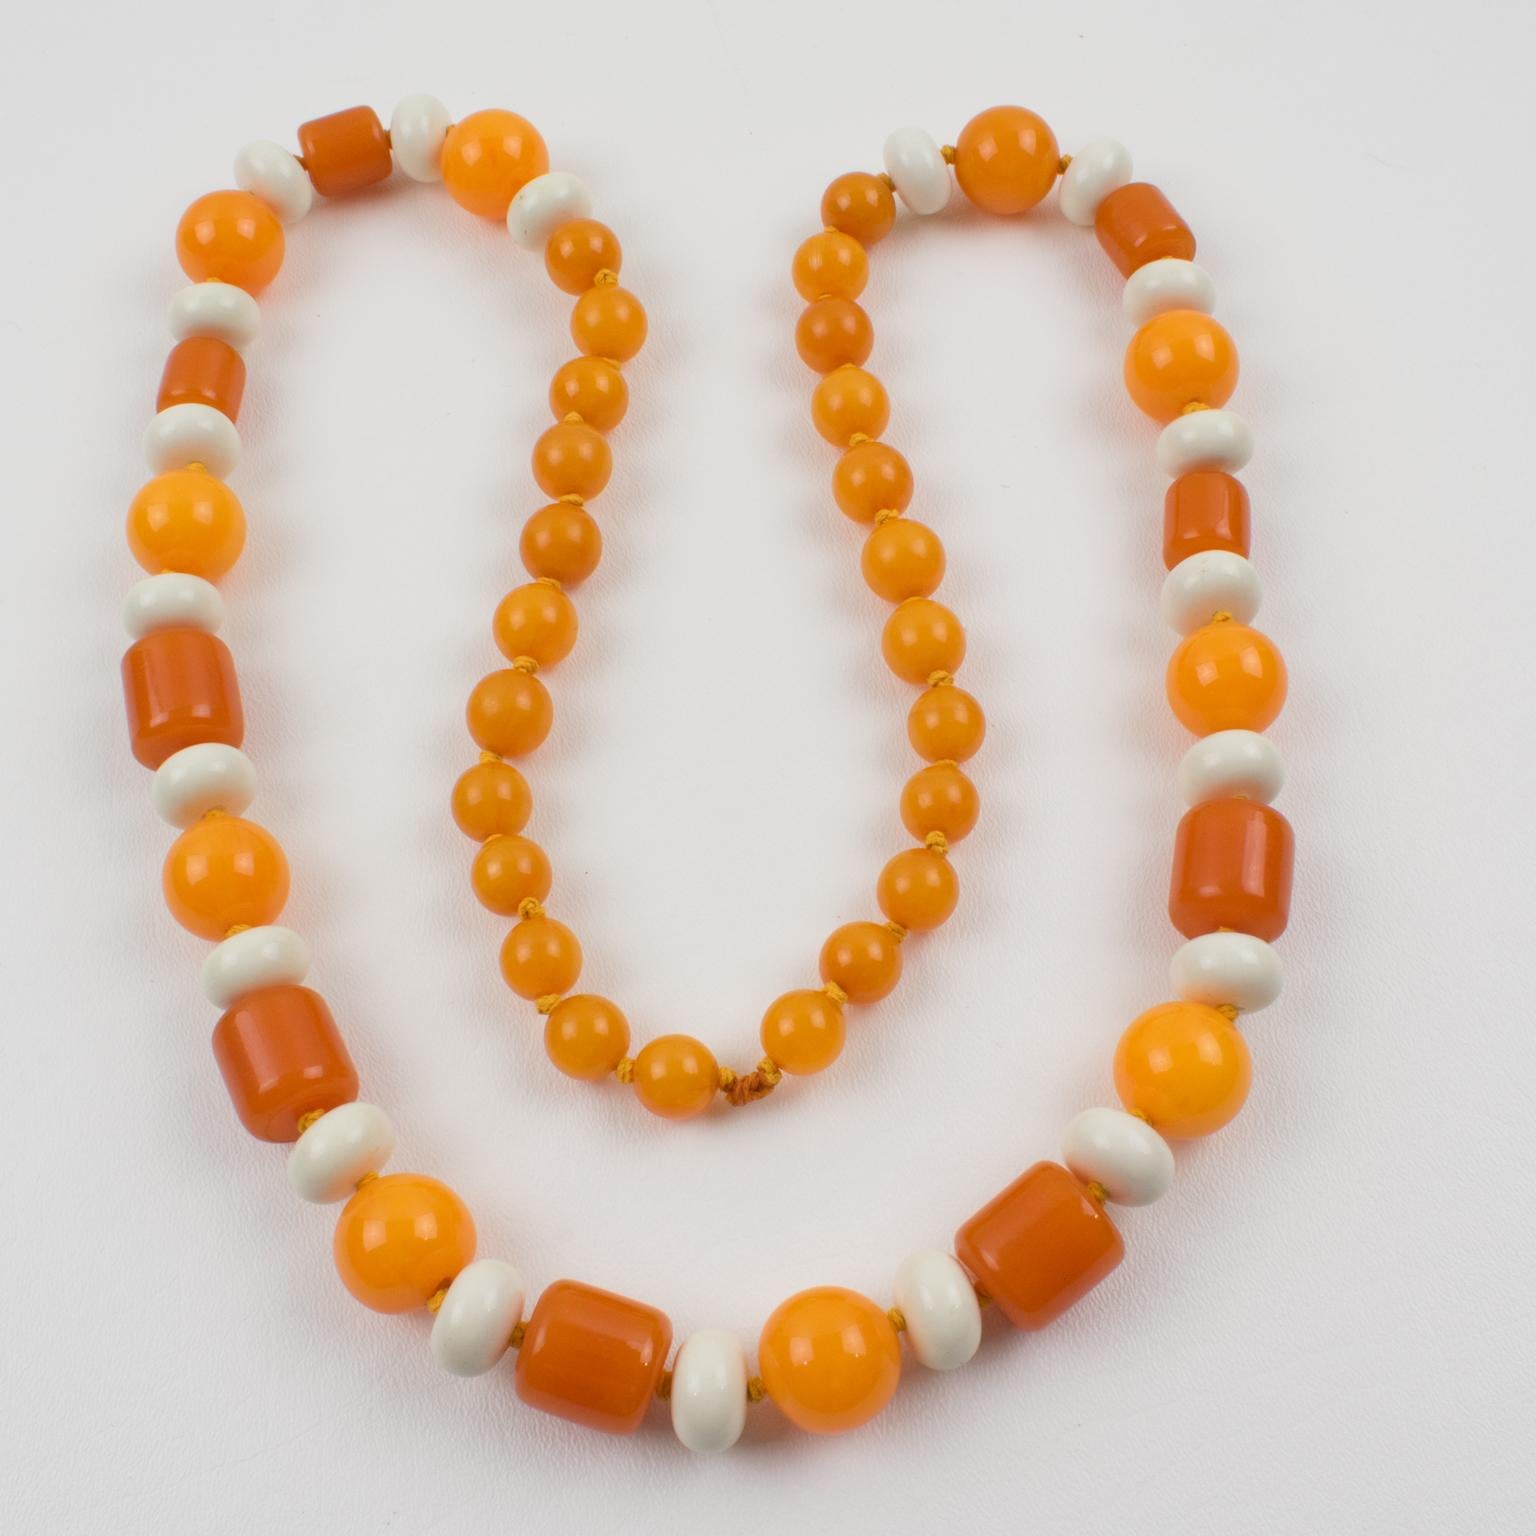 Ce ravissant collier extra-long en bakélite et lucite présente un assortiment de perles de différentes formes sculptées : rondes, tomates et bâtonnets. Le mélange de couleurs vives et ensoleillées se compose de marbre orange tangerine, de marbre